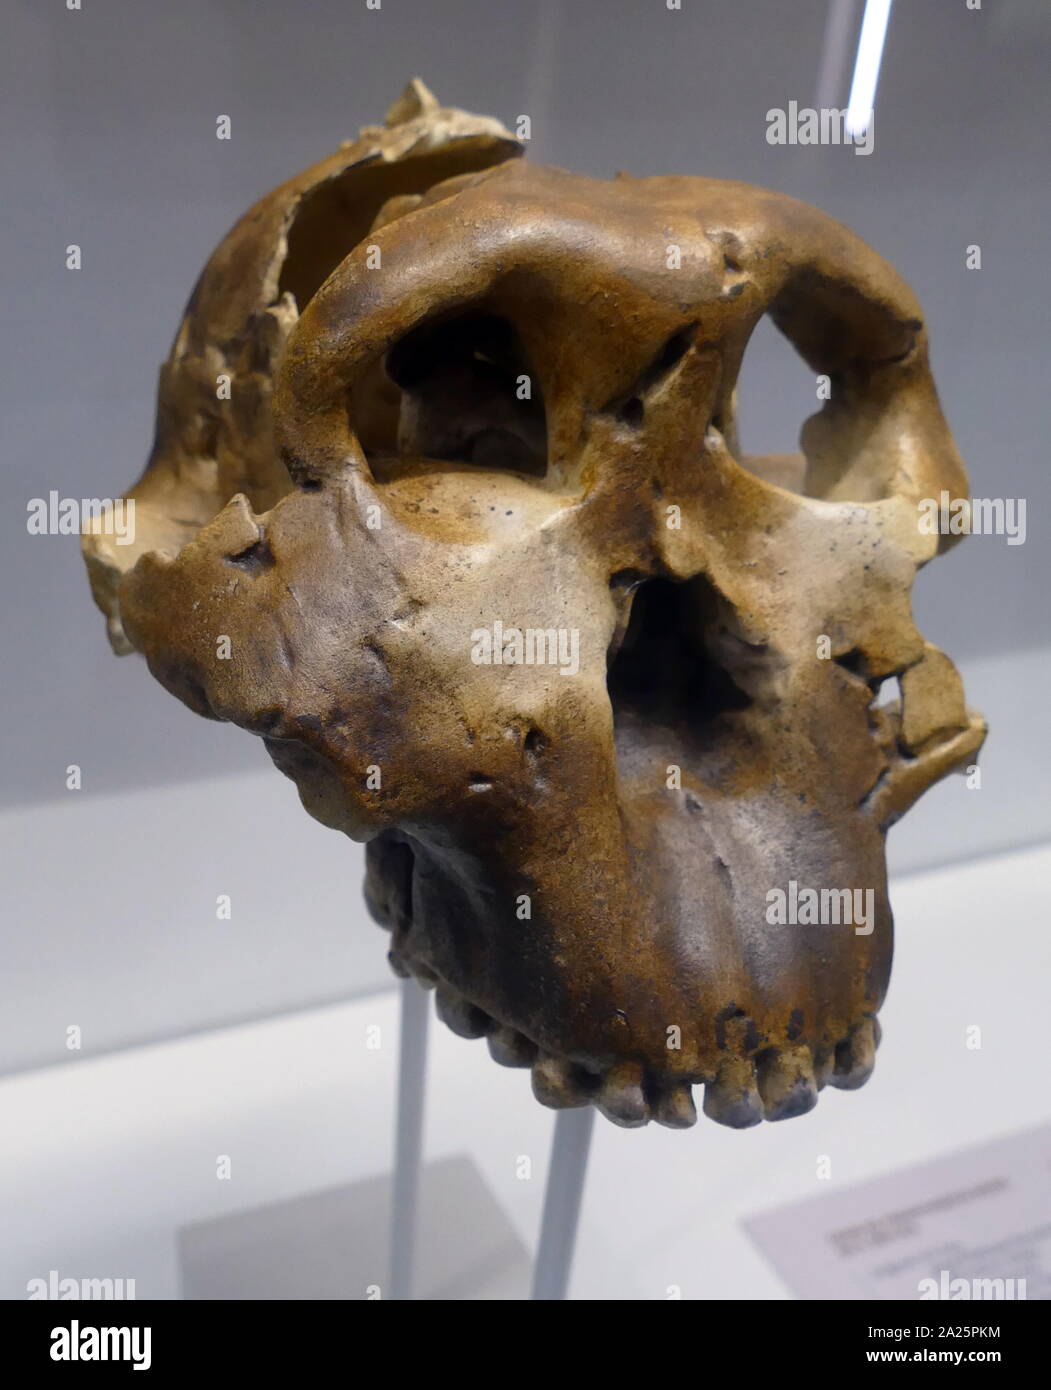 Paranthropus Boisei oder Australopithecus boisei, einem frühen Homininen, beschrieben als der größte der Gattung Paranthropus (robusten australopithecinen). Er lebte in Ostafrika während des Pleistozän von etwa 2,4 bis 1,4 Millionen Jahren. Zuerst entdeckt, durch die Anthropologin Mary Leakey am 17 Juli, 1959, an der Olduvai Schlucht, Tansania, die gut erhaltene Schädel (Spitzname "Nussknacker") war mit 1,75 Millionen Jahren datiert und hatte markante Merkmale des robusten australopithecinen 3] Stockfoto